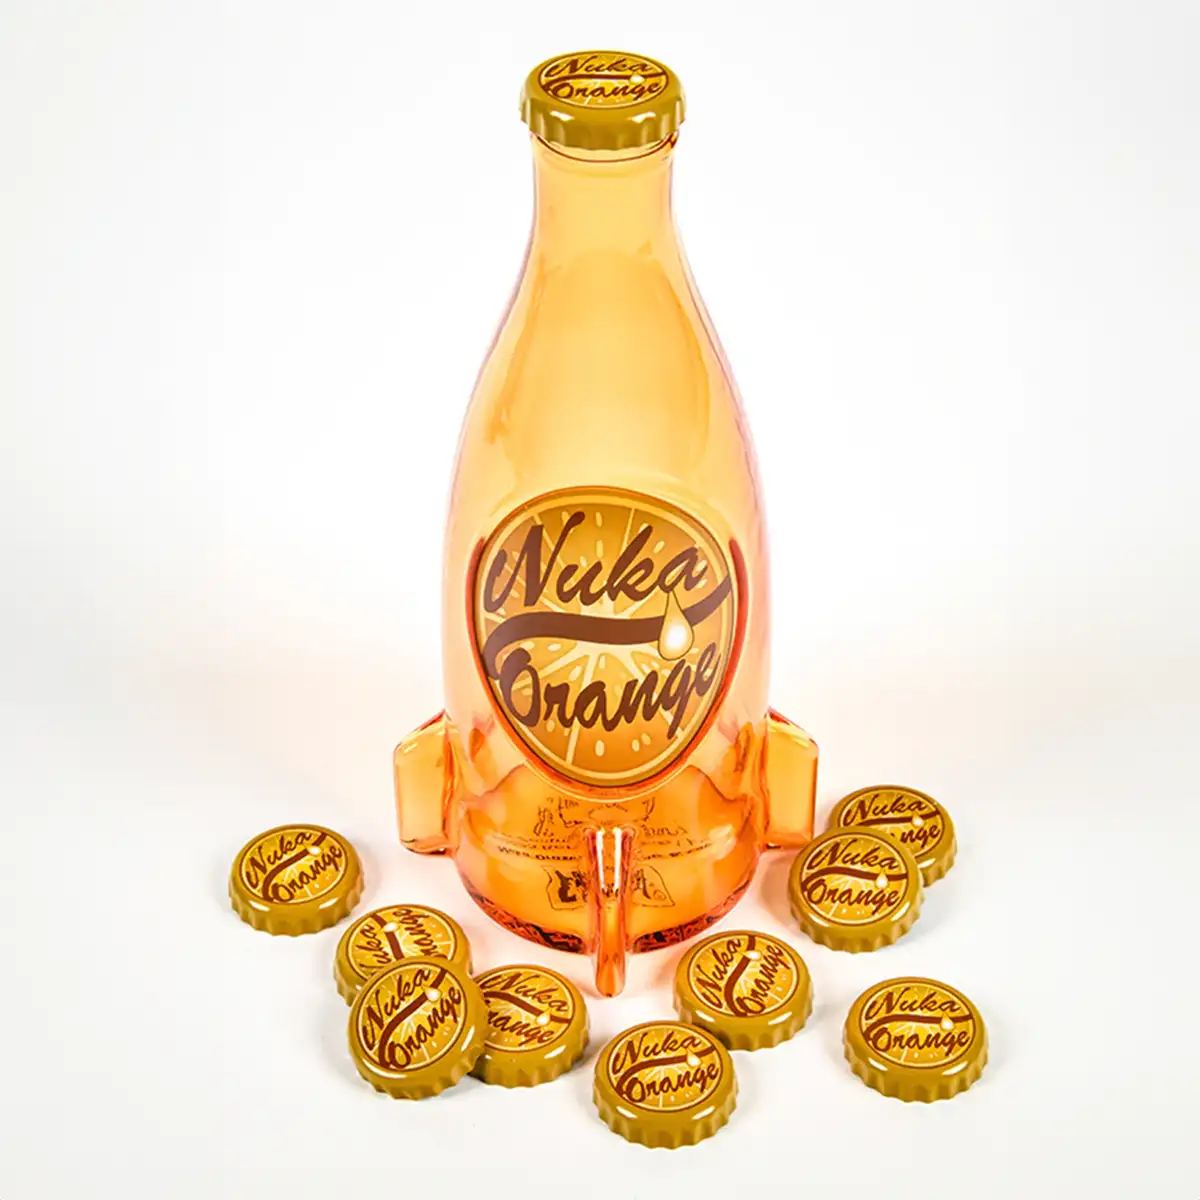 Fallout "Nuka Cola Orange" Glasflasche und Kronkorken Image 3